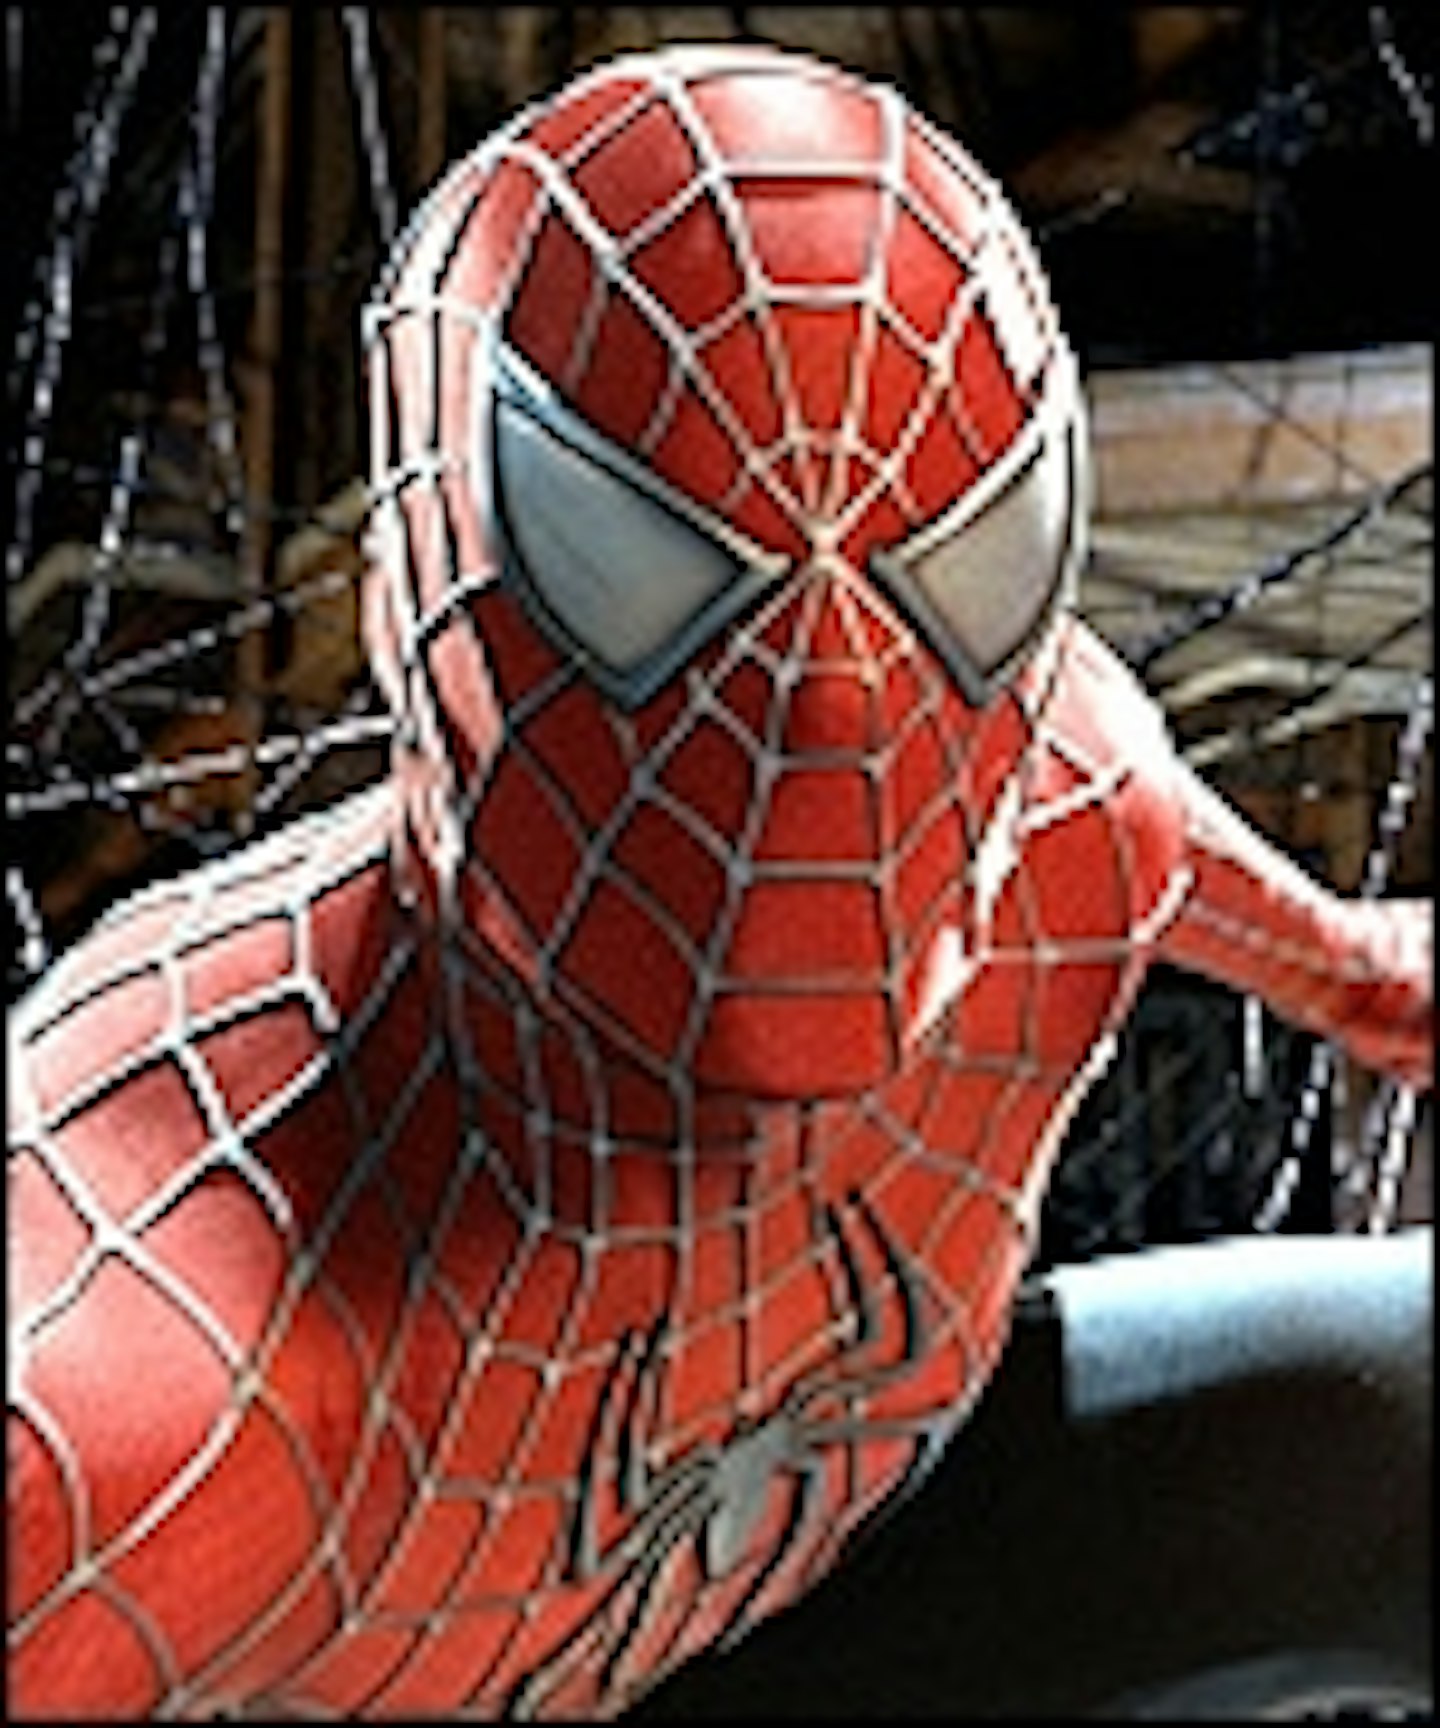 James Vanderbilt To Write Spider-Man 4